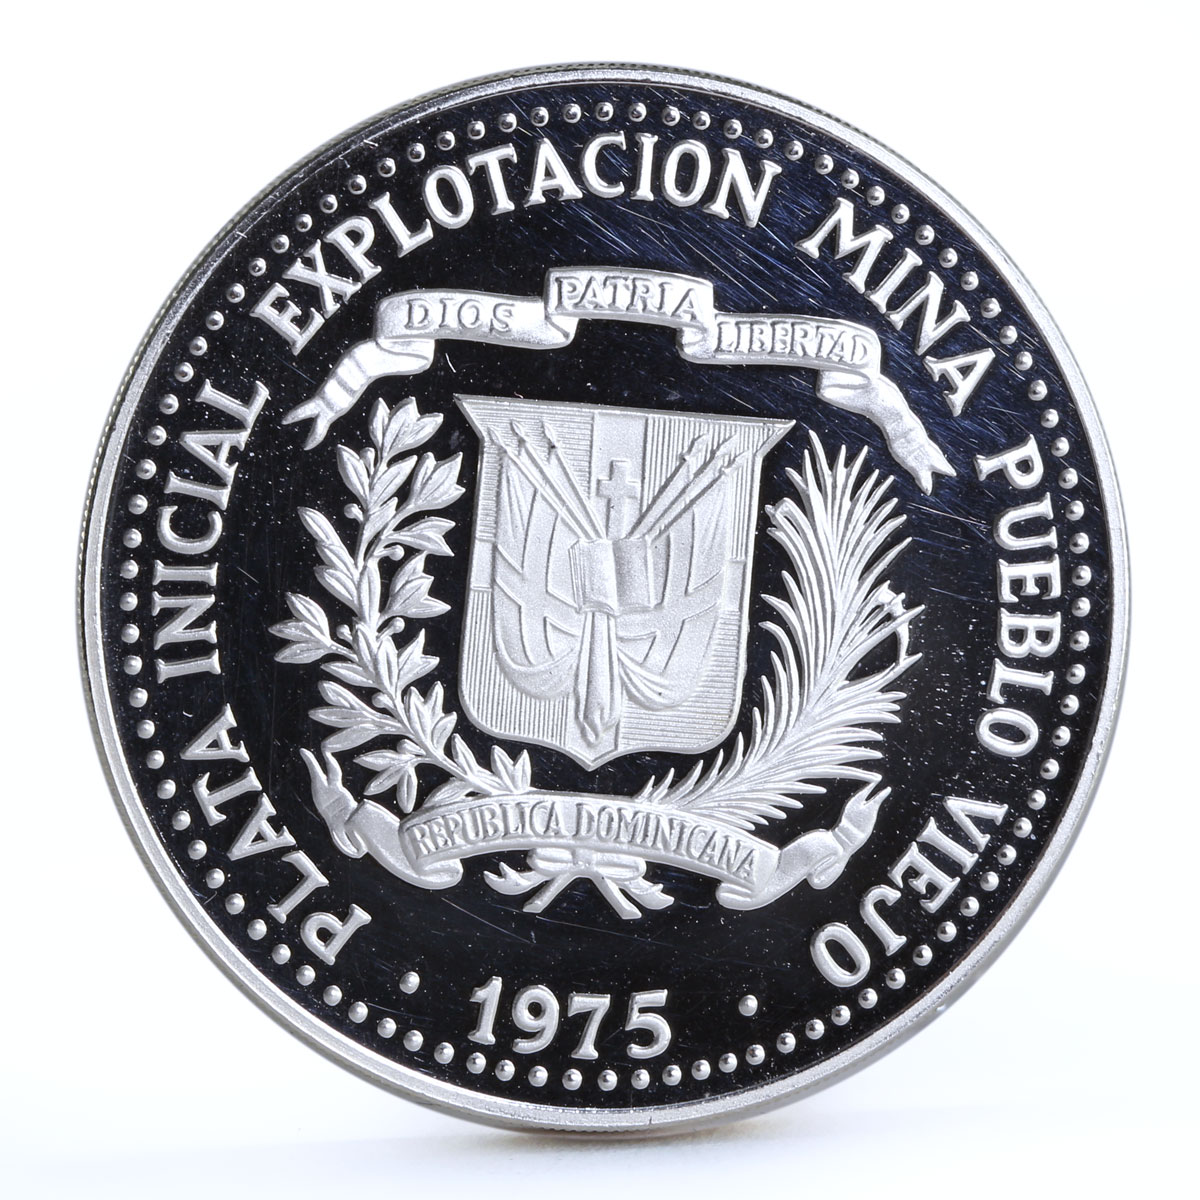 Dominican Republic 10 pesos Calture Taino Art Statuette proof silver coin 1975